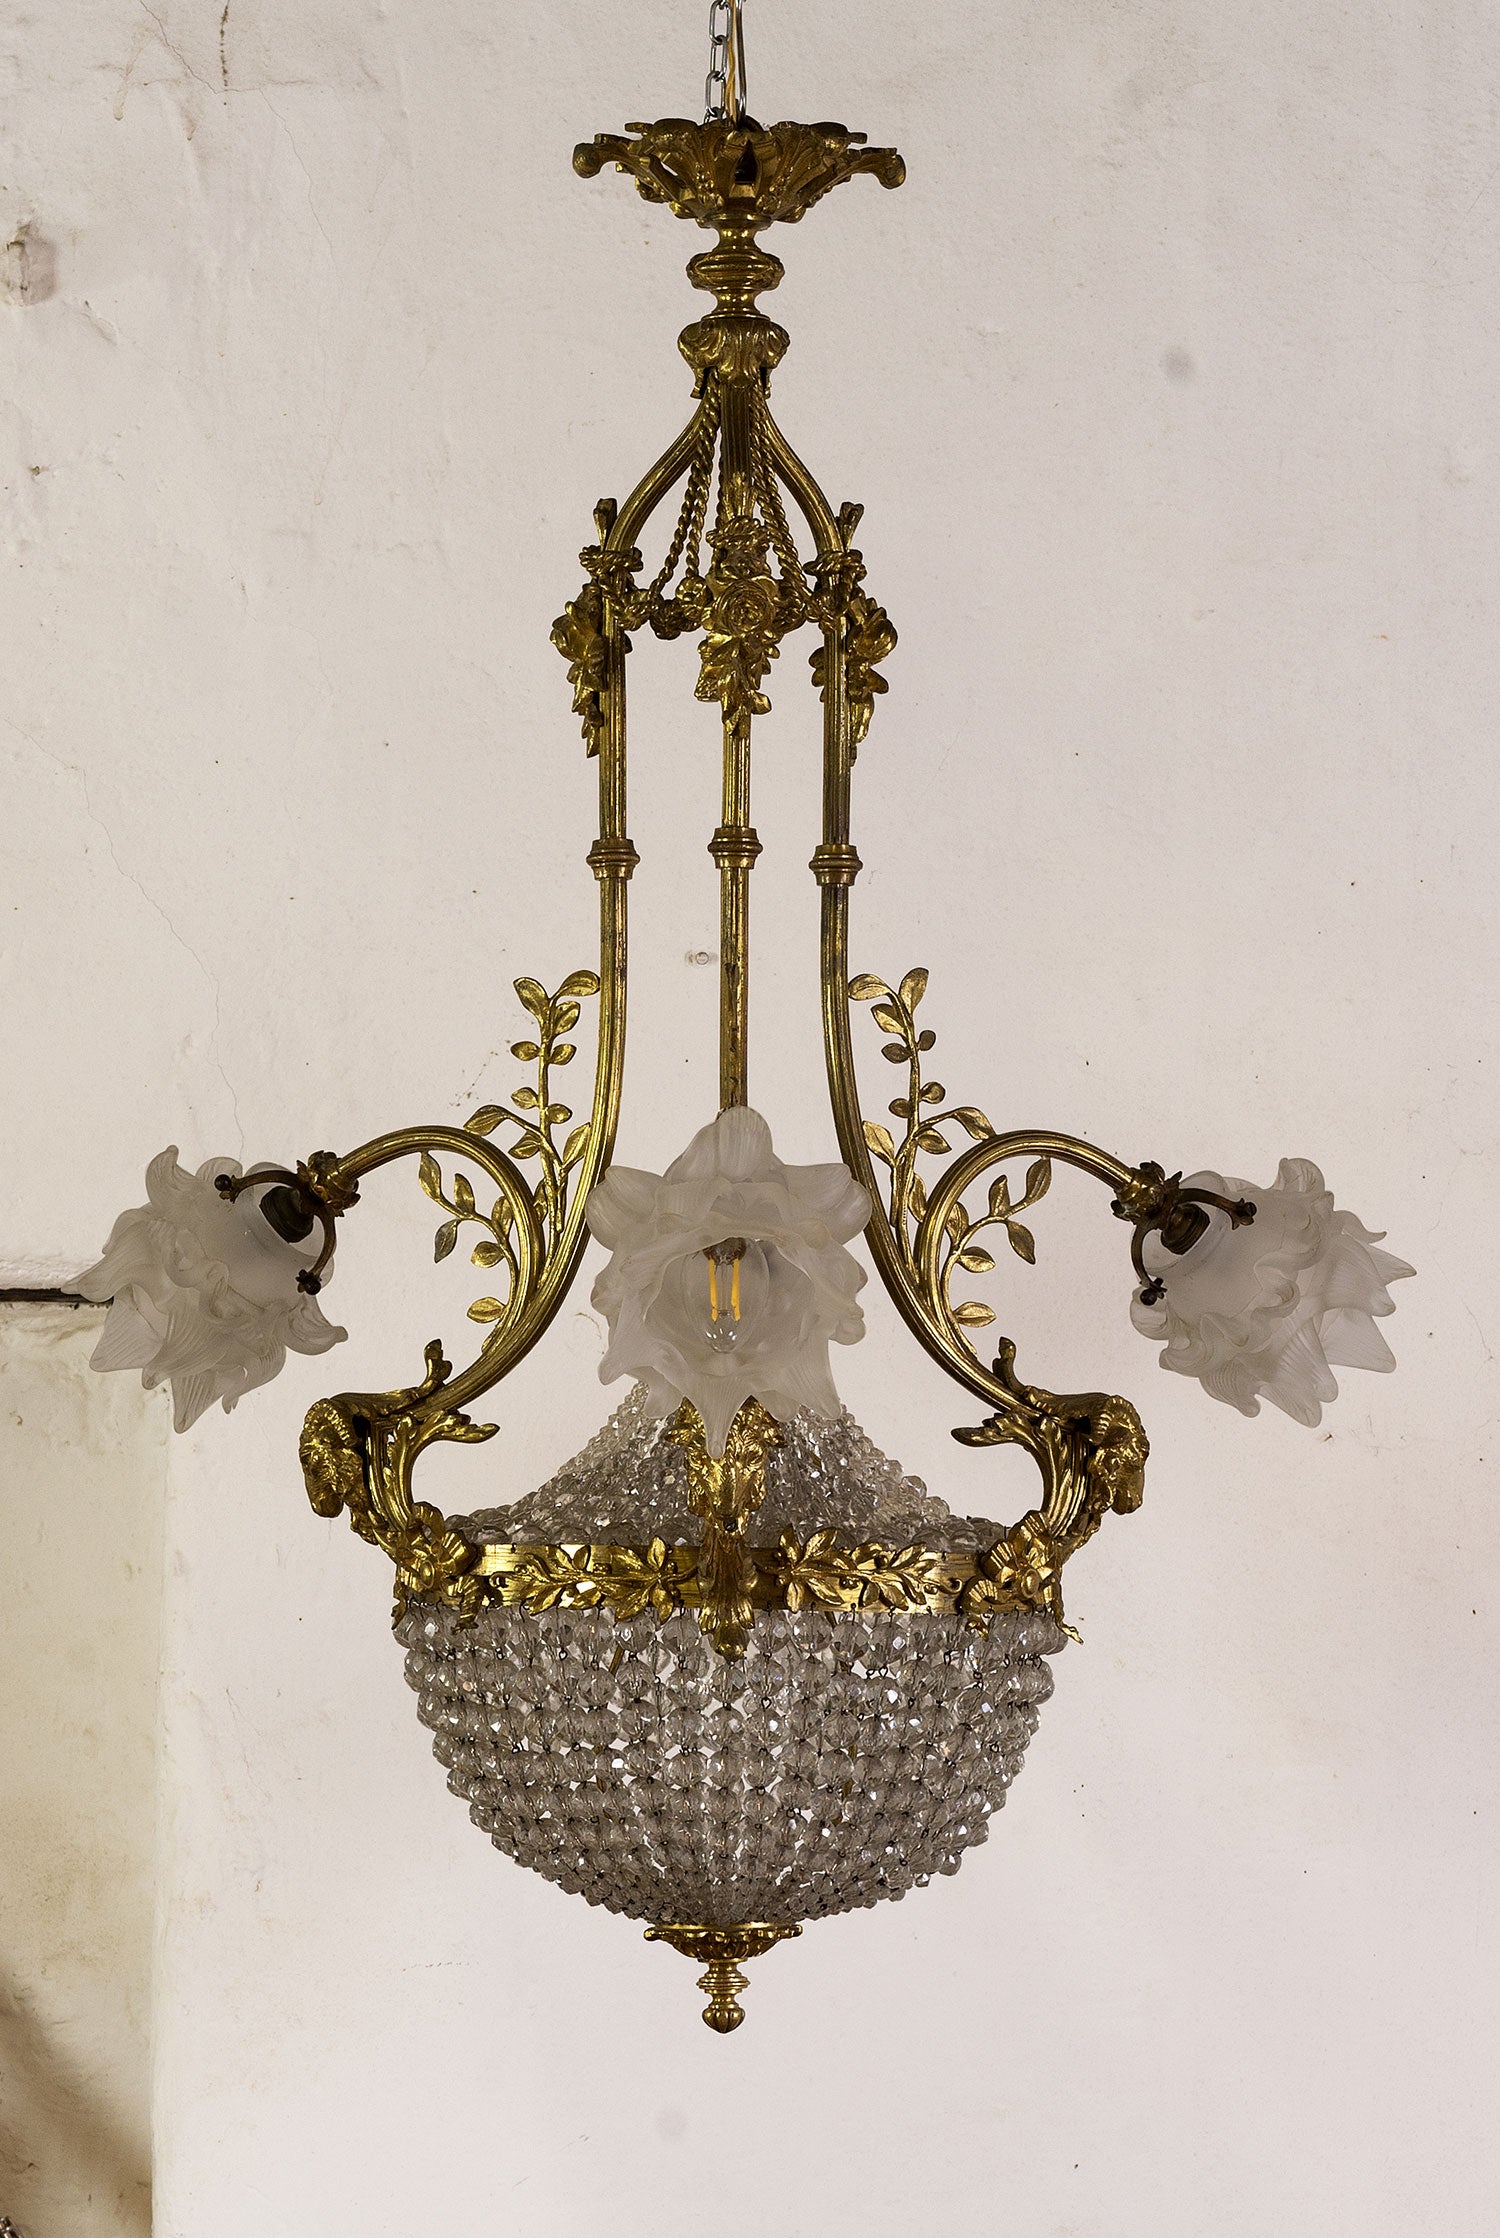 Antico Lampadario di cristallo, Italia Anni '20, periodo Art nouveau - 4 Luci-Lo Stile Italiano